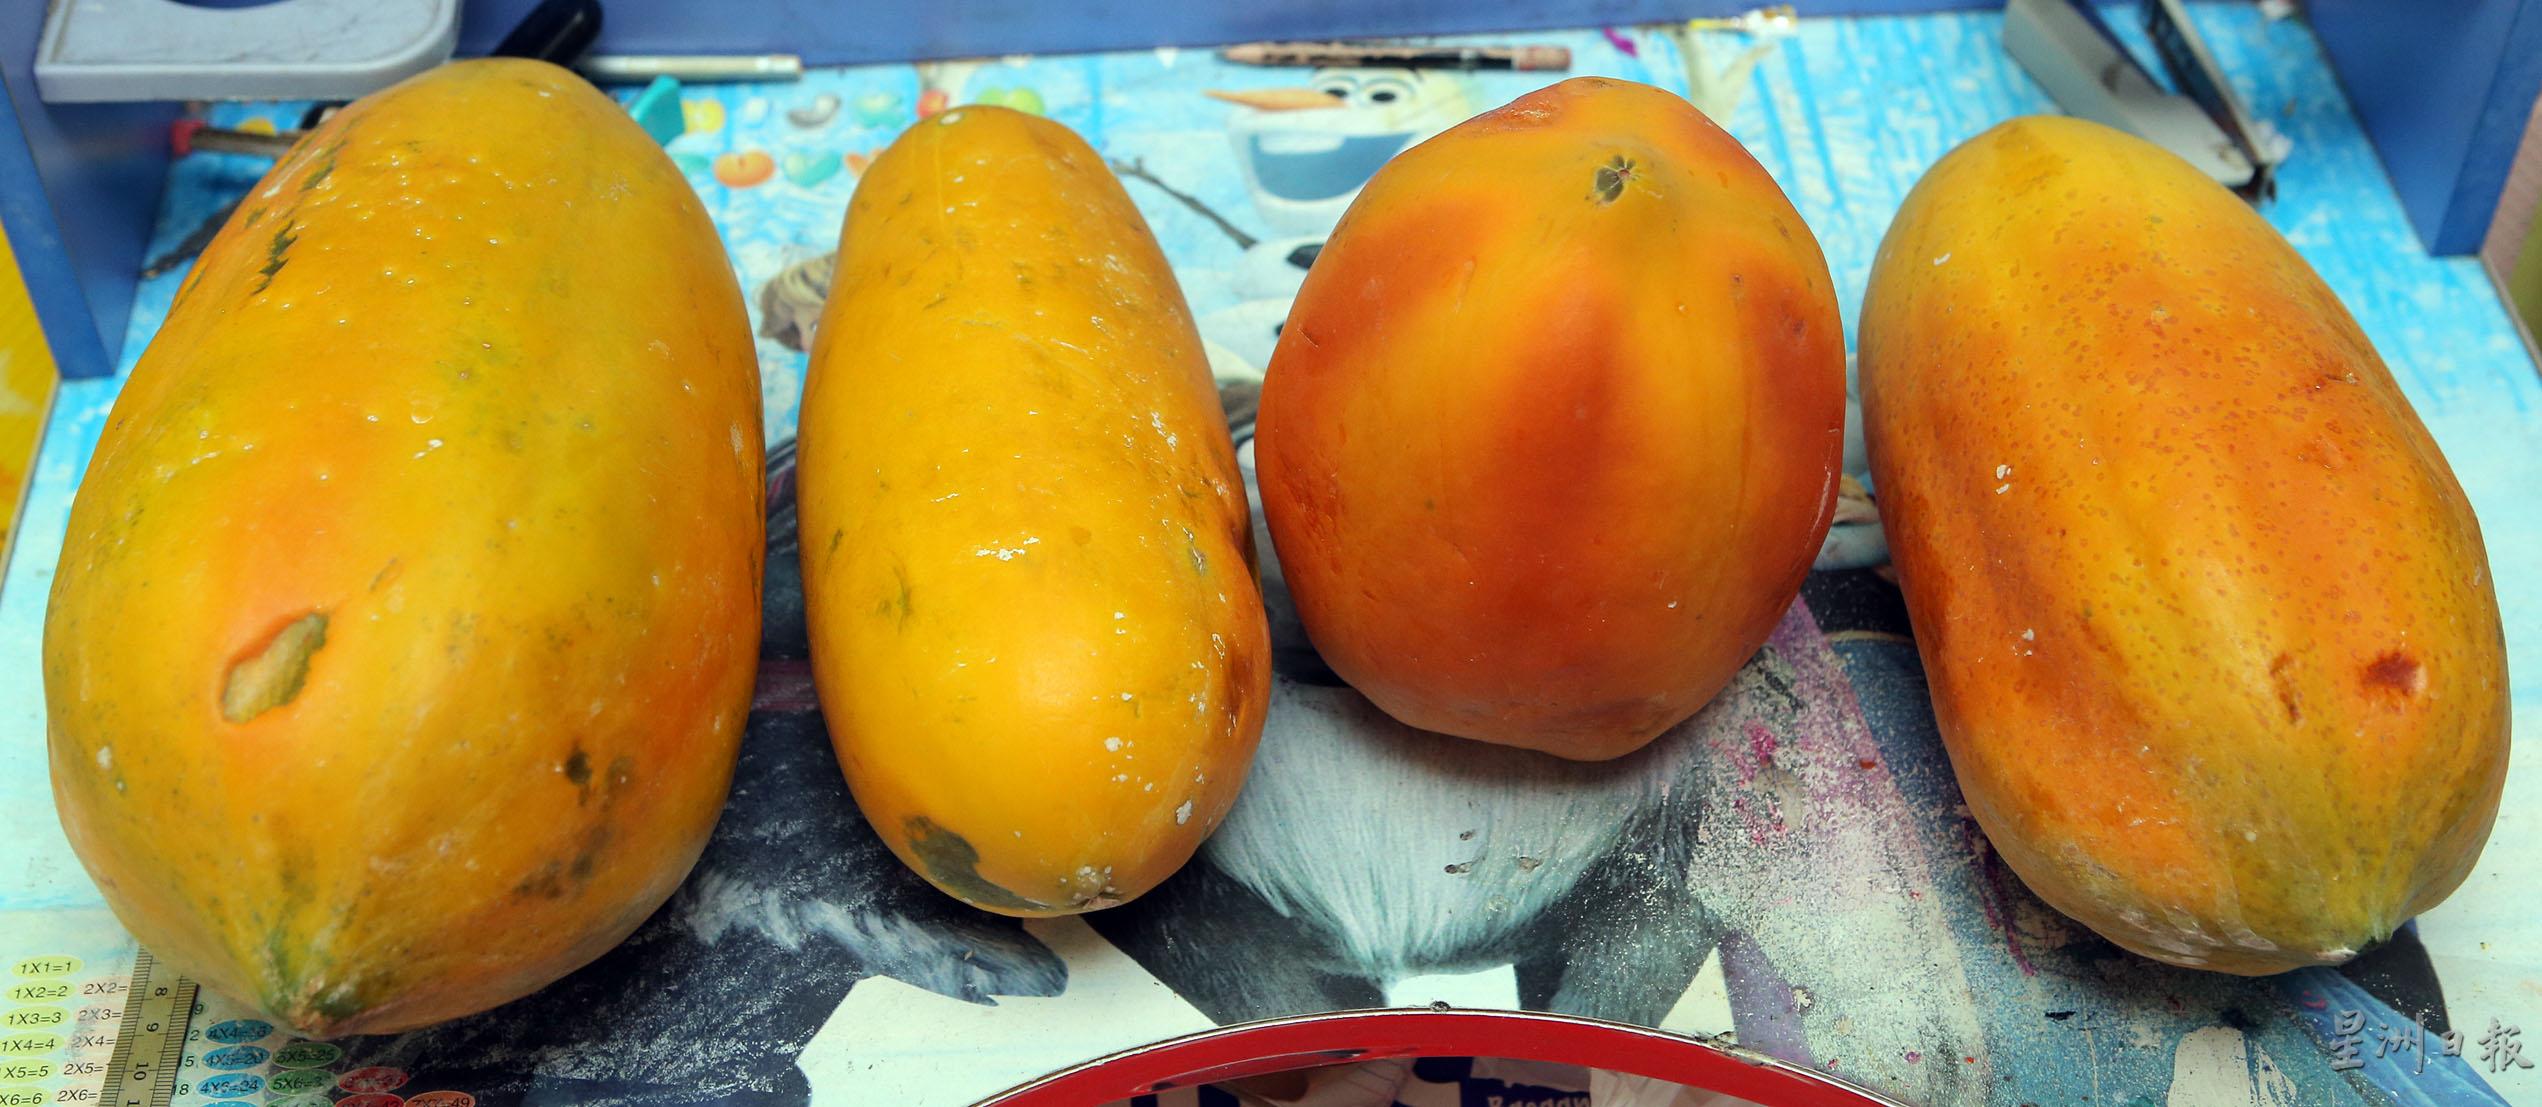 台湾红妃木瓜和本地木瓜放在一起比较，红妃木瓜的色泽明显更红润漂亮。左边两粒为本地木瓜，右一为椭圆形红妃木瓜，右二为圆形红妃木瓜。

